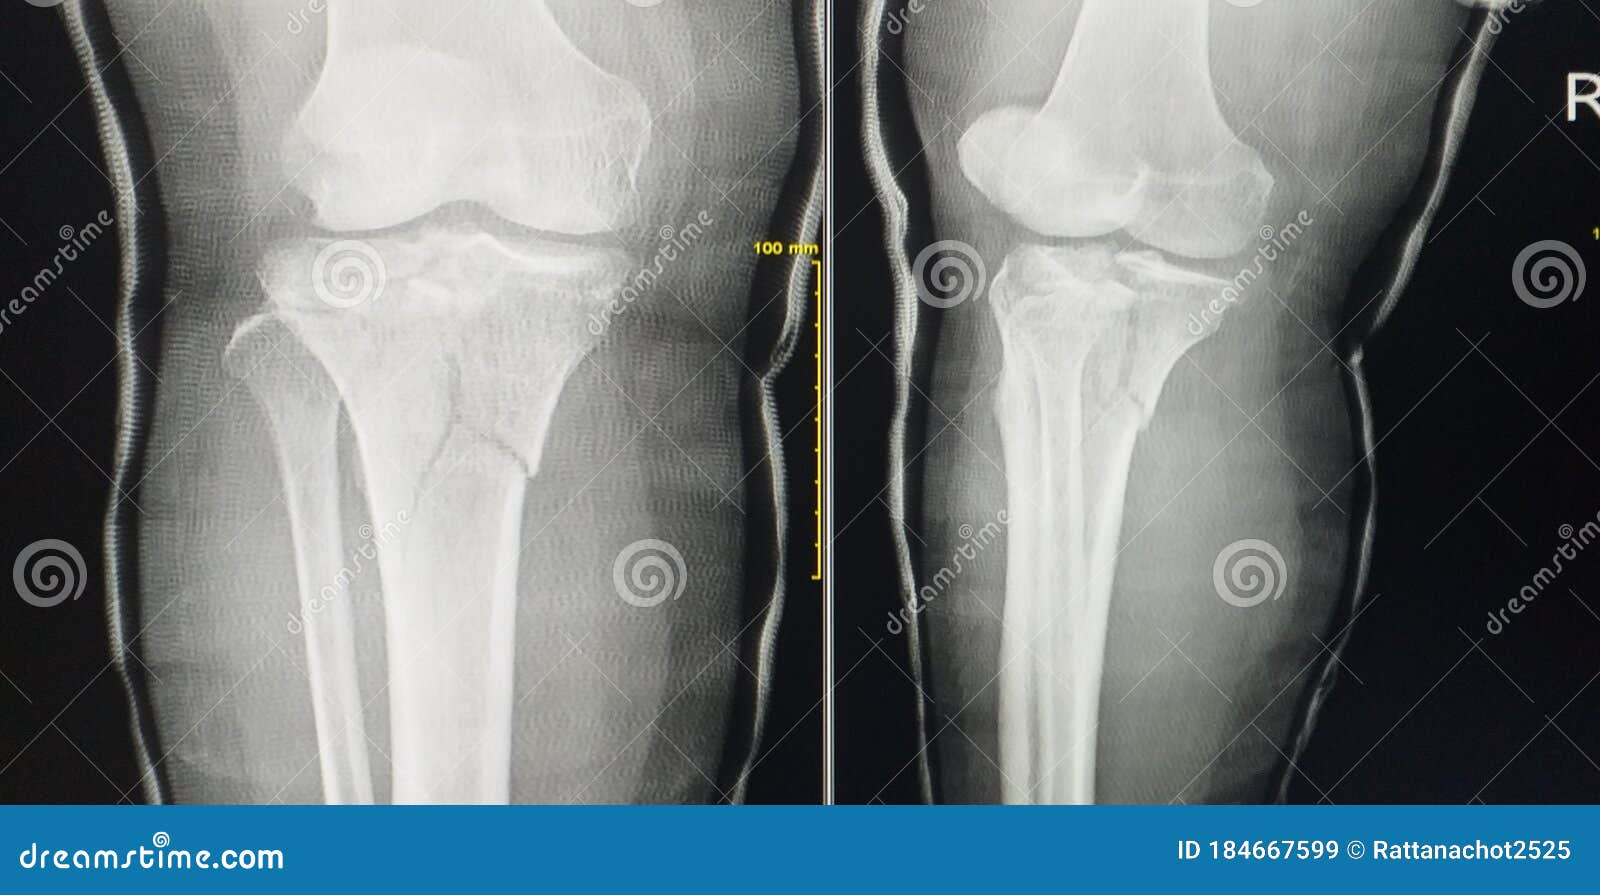 X射线右腿ap 侧向后铸骨折近端胫骨通过关节没有位错 骨破坏 正常关节空间 库存图片 图片包括有腓骨 适应